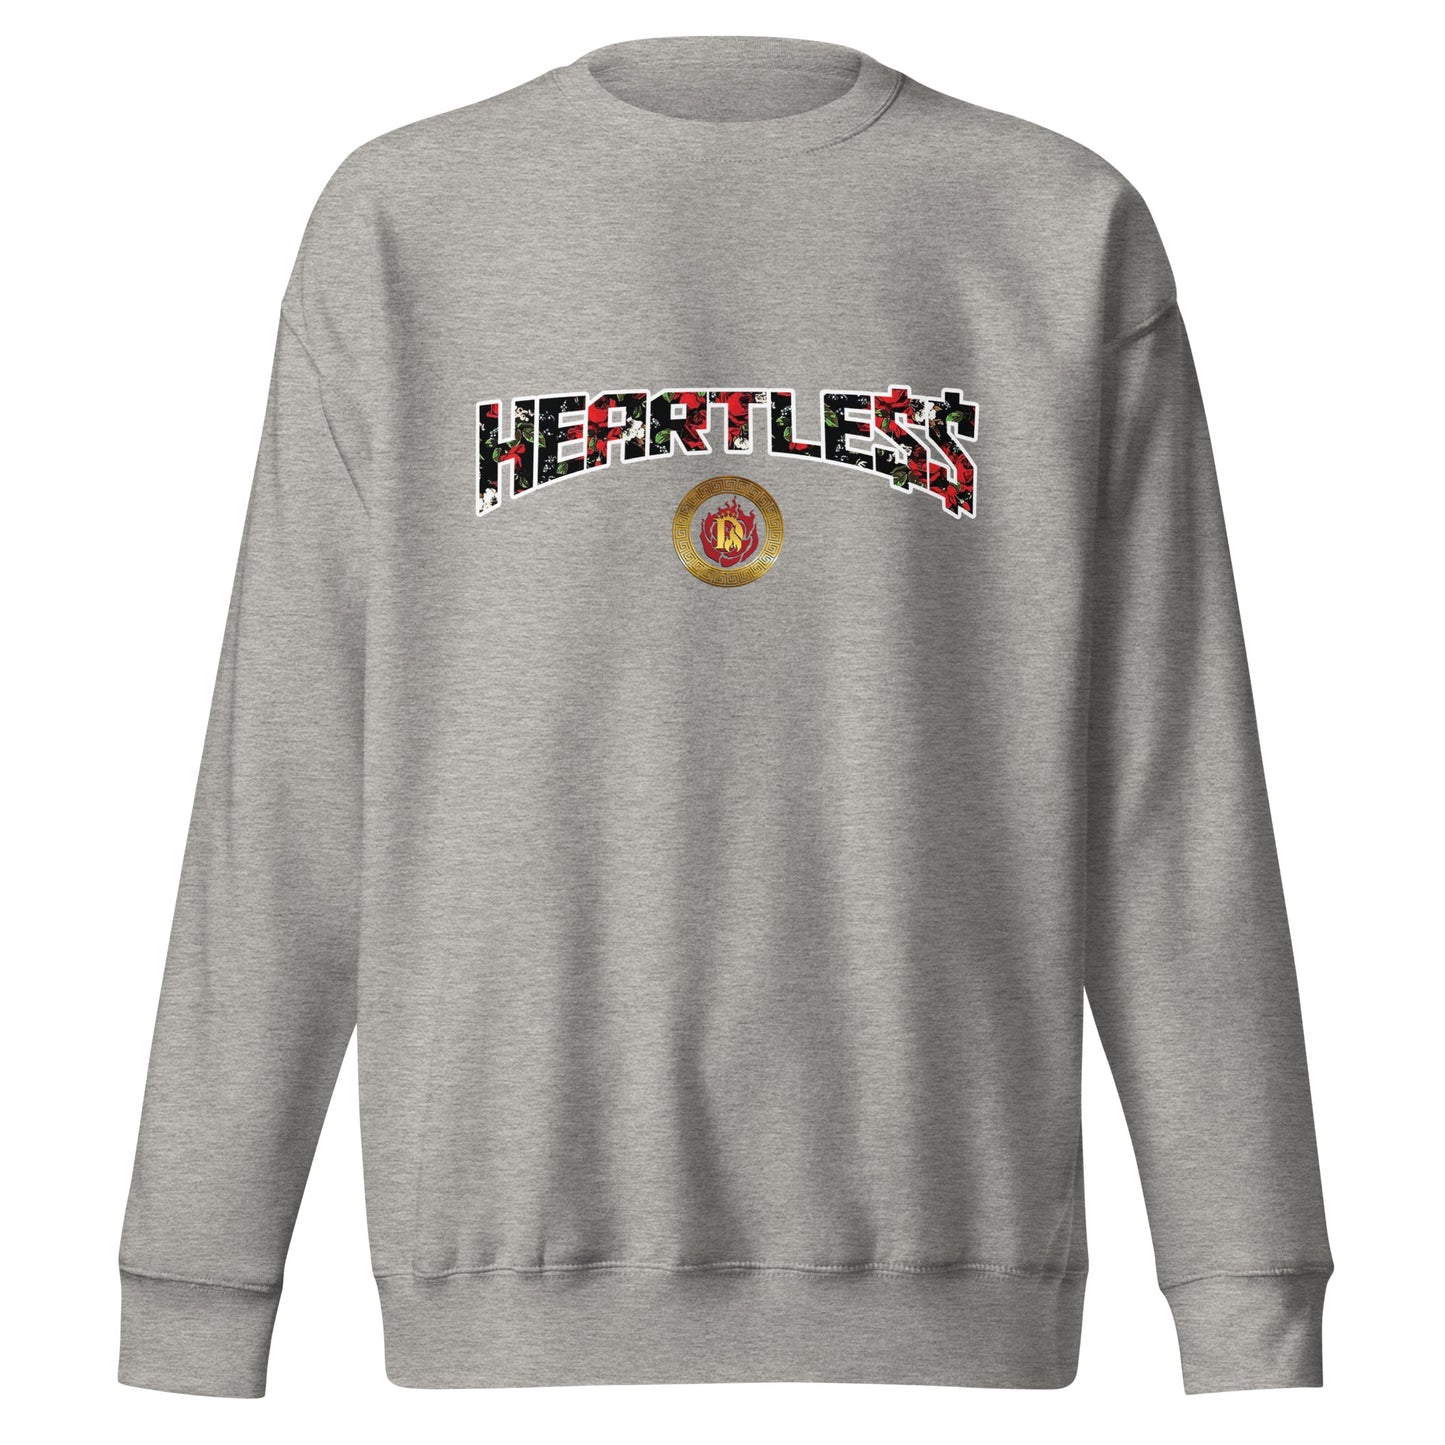 Heartle$$ Sweatshirt